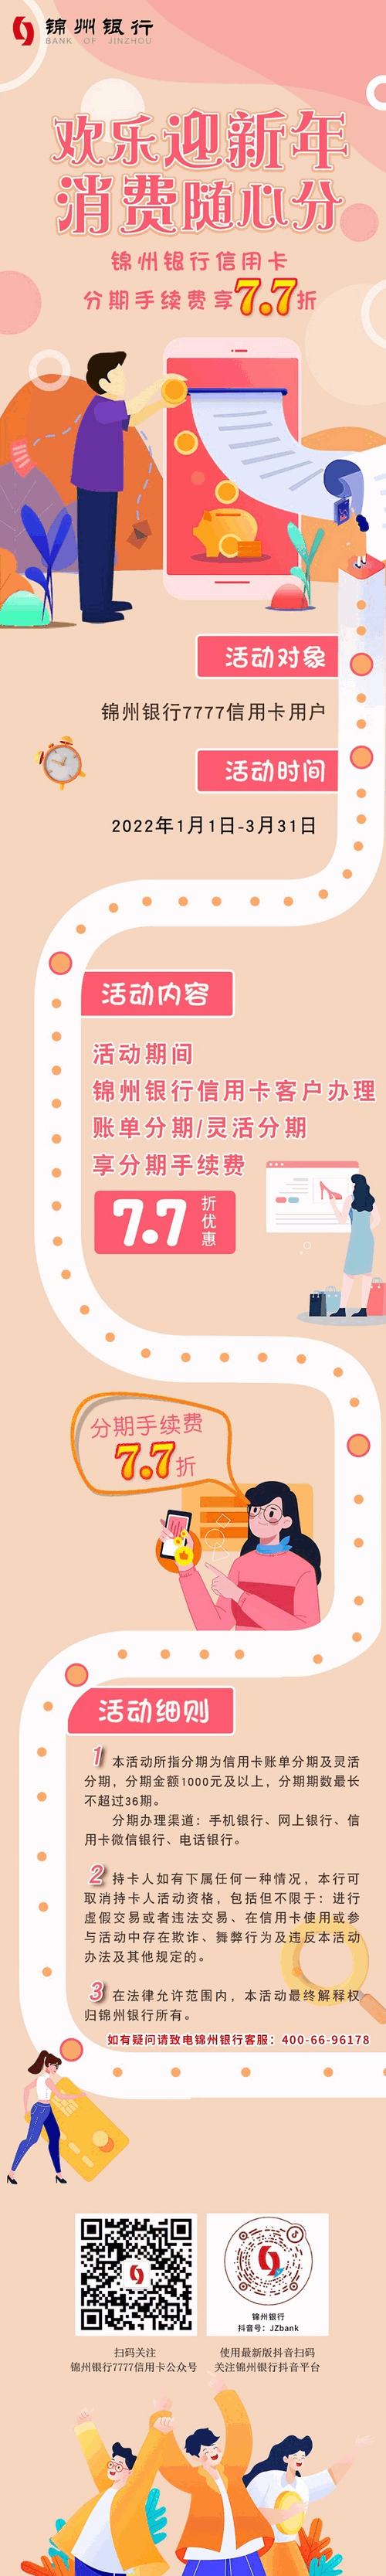 锦州银行信用卡账单分期手续费7.7折活动